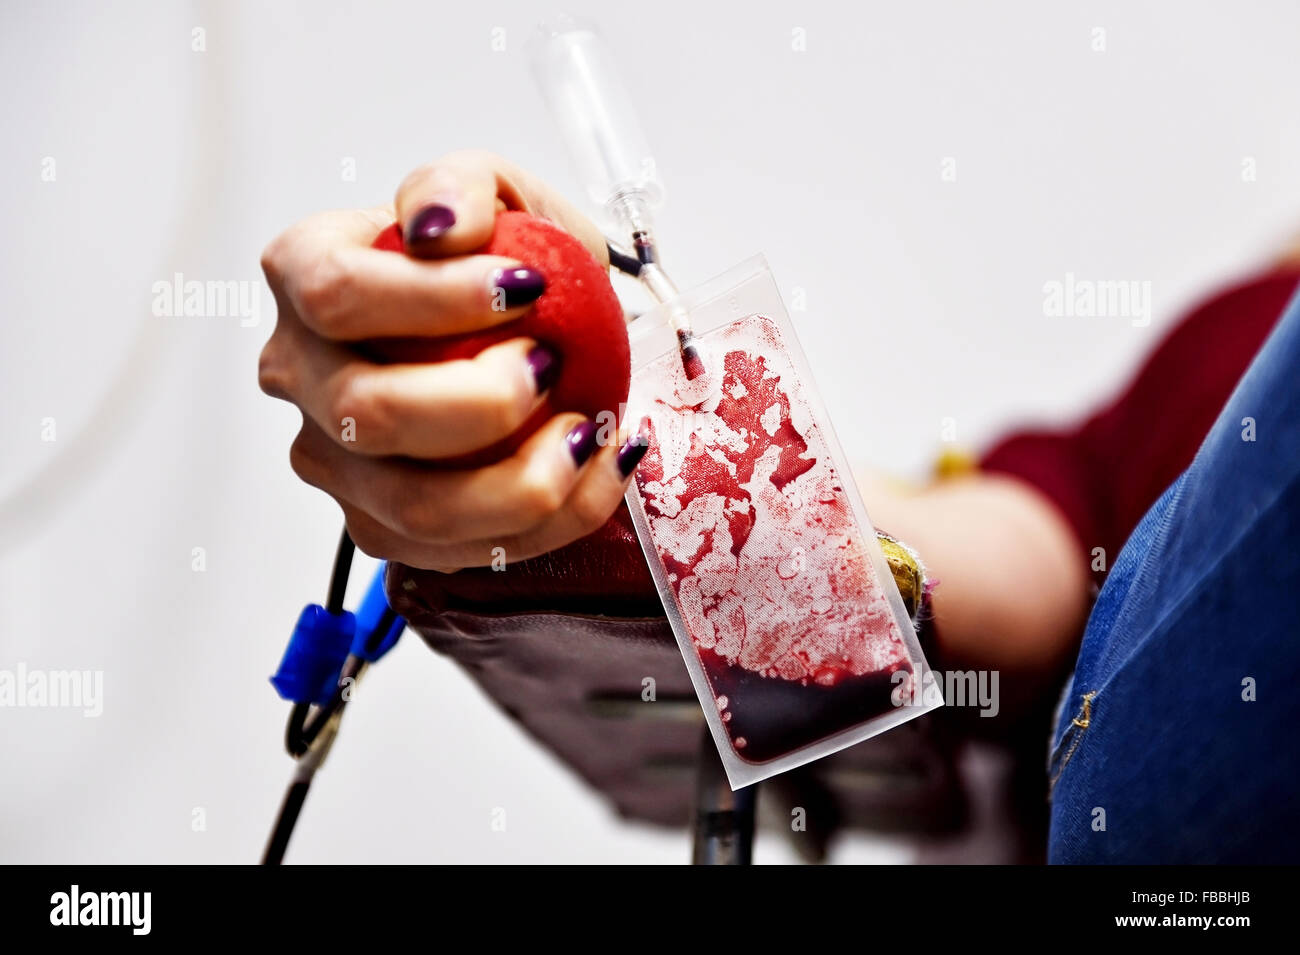 Détail de la main d'un don de sang, serrant une balle médicale et une poche de sang en plastique dans un hôpital Banque D'Images